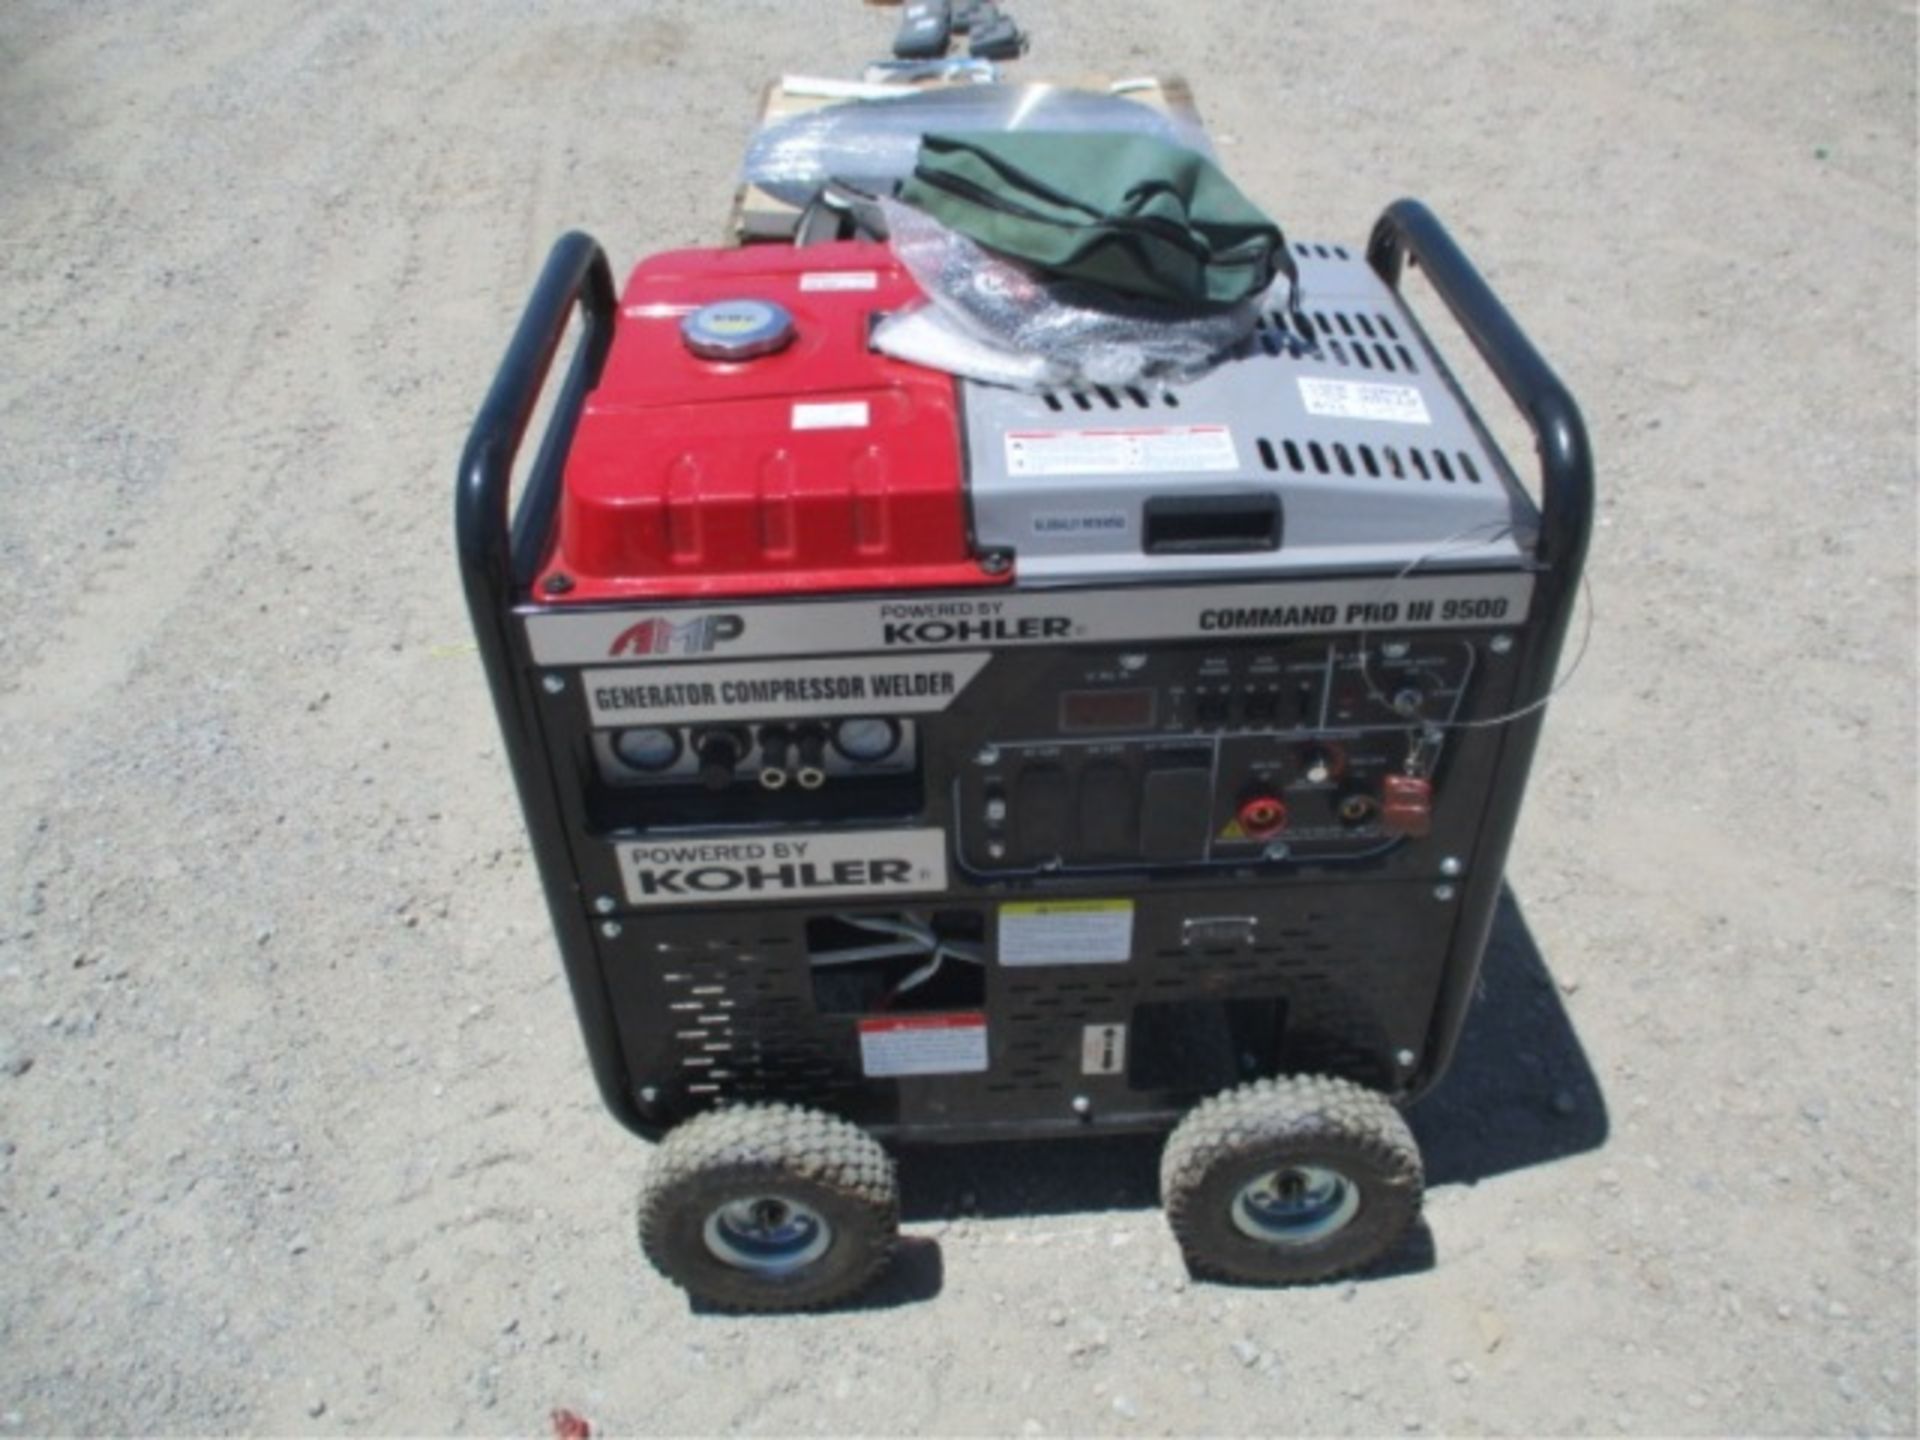 Kohler Command Pro III 9500 Generator Compressor, Welder, Gas Powered, S/N: 4919803918 - Image 3 of 28